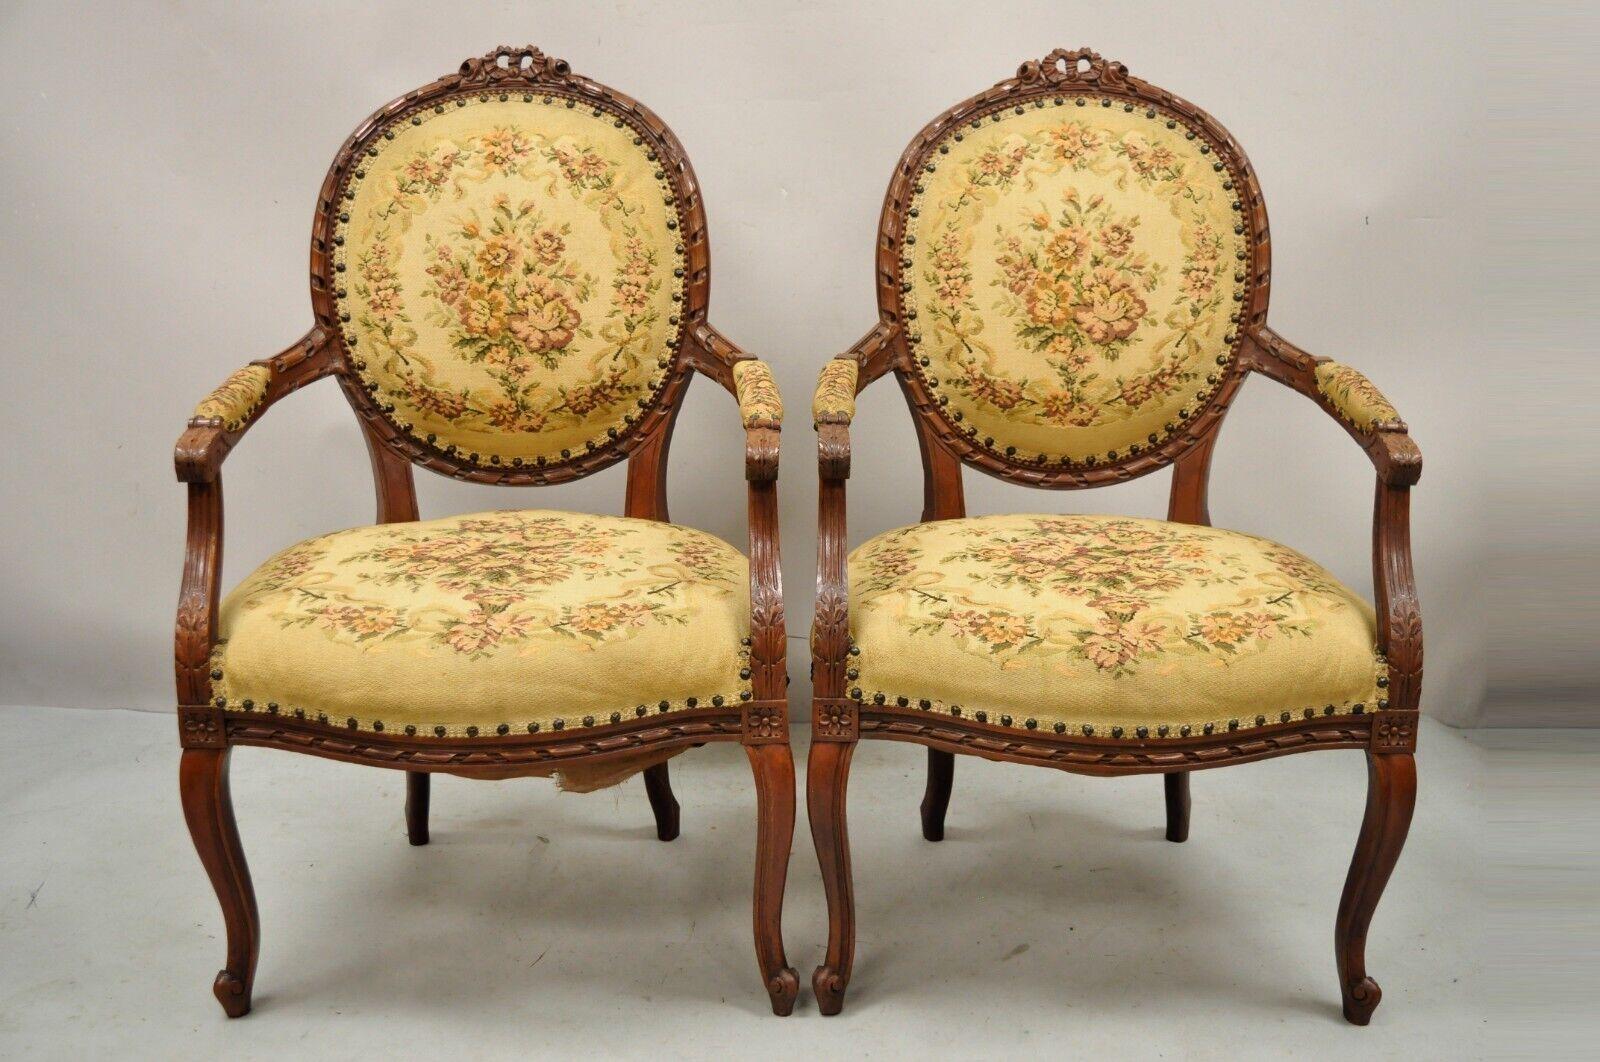 Antike Französisch Land Louis XV viktorianischen Stil Floral Tapestry Arm Stühle - ein Paar. Element verfügt über ein Band und Rose geschnitzt Kamm, florale Tapisserie Polsterung, Massivholzrahmen, gepolsterte Armlehnen, Cabriole Beine, sehr schöne